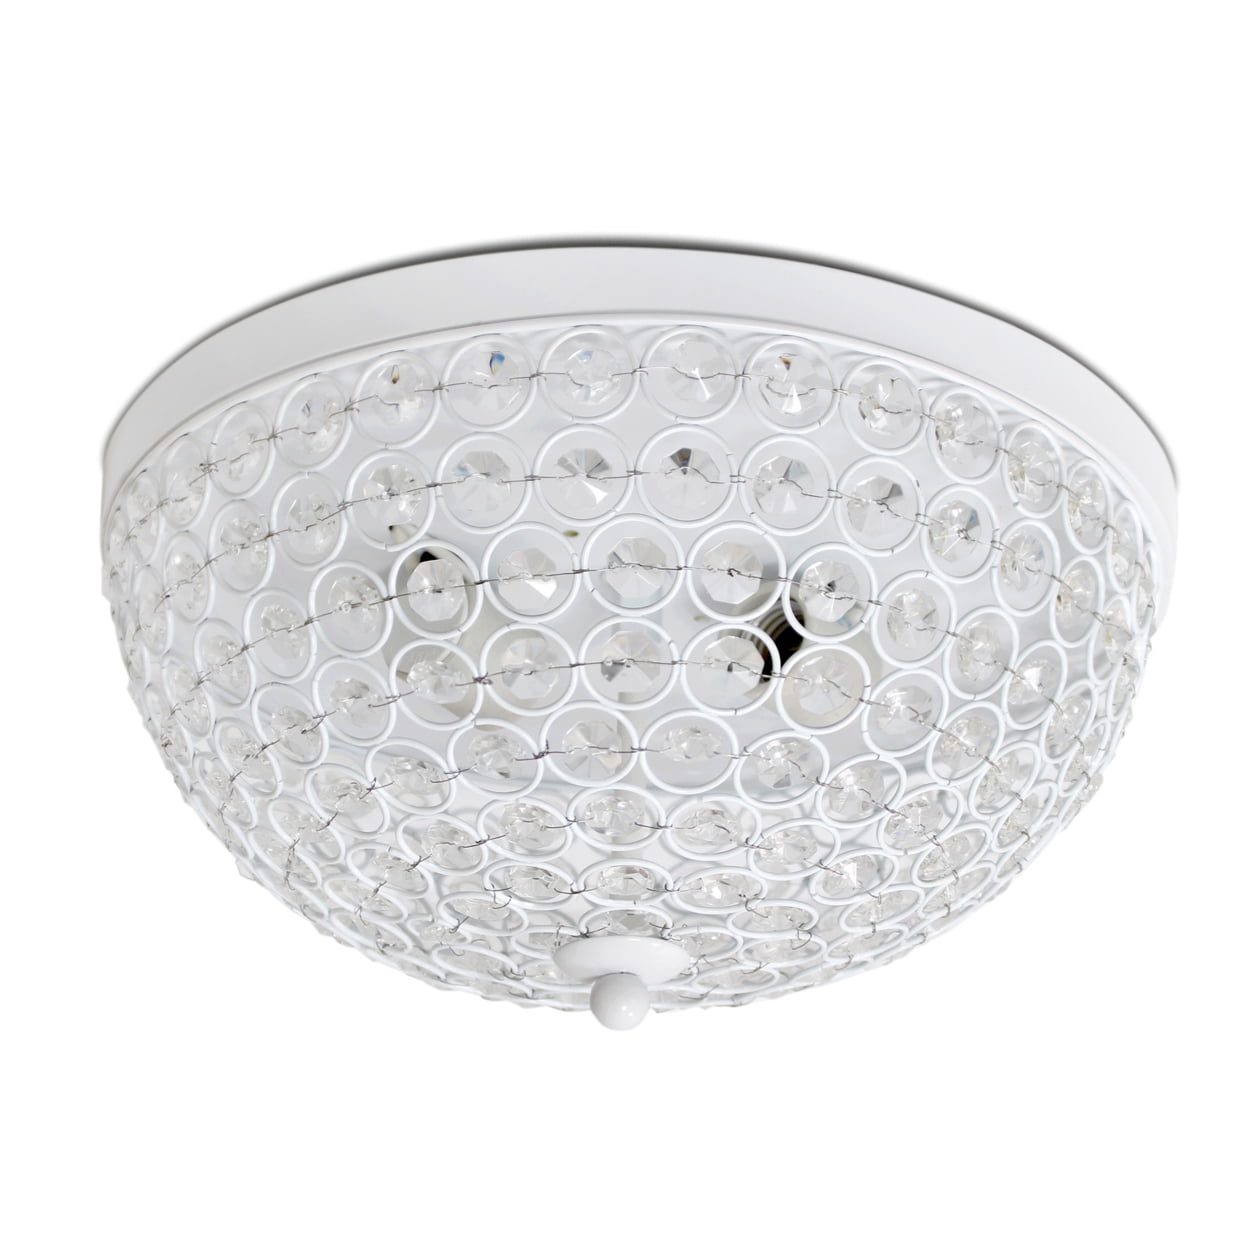 Elegant Designs Fm1000-wht 2 Light Elipse Crystal Flush Mount Ceiling Light, White